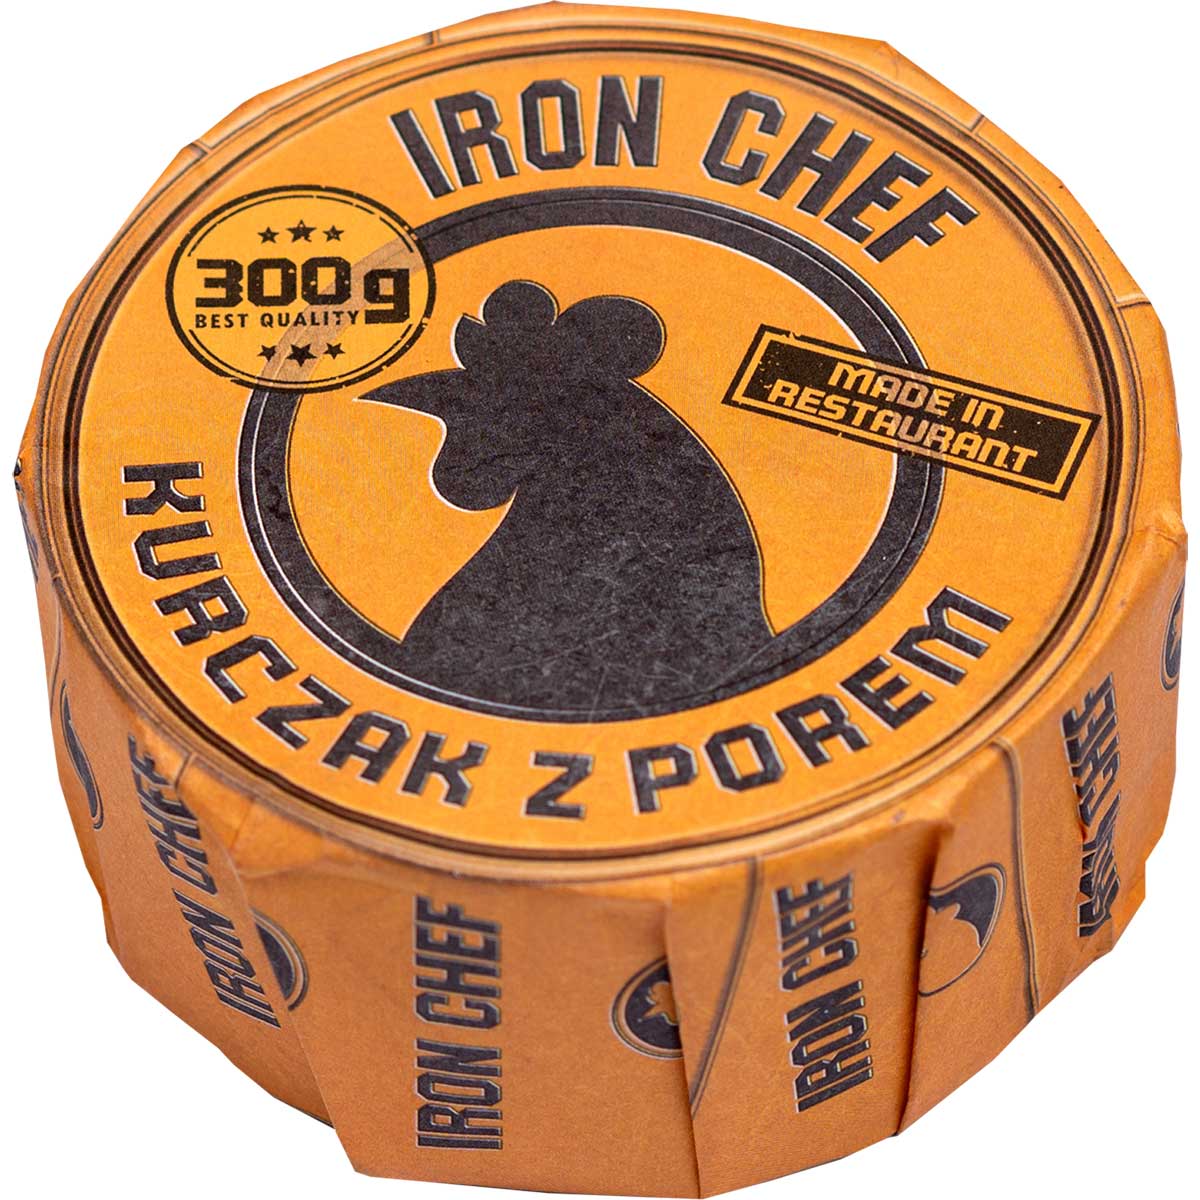 Консервовані продукти Iron Chef - Курка з цибулею пореєм 300 г